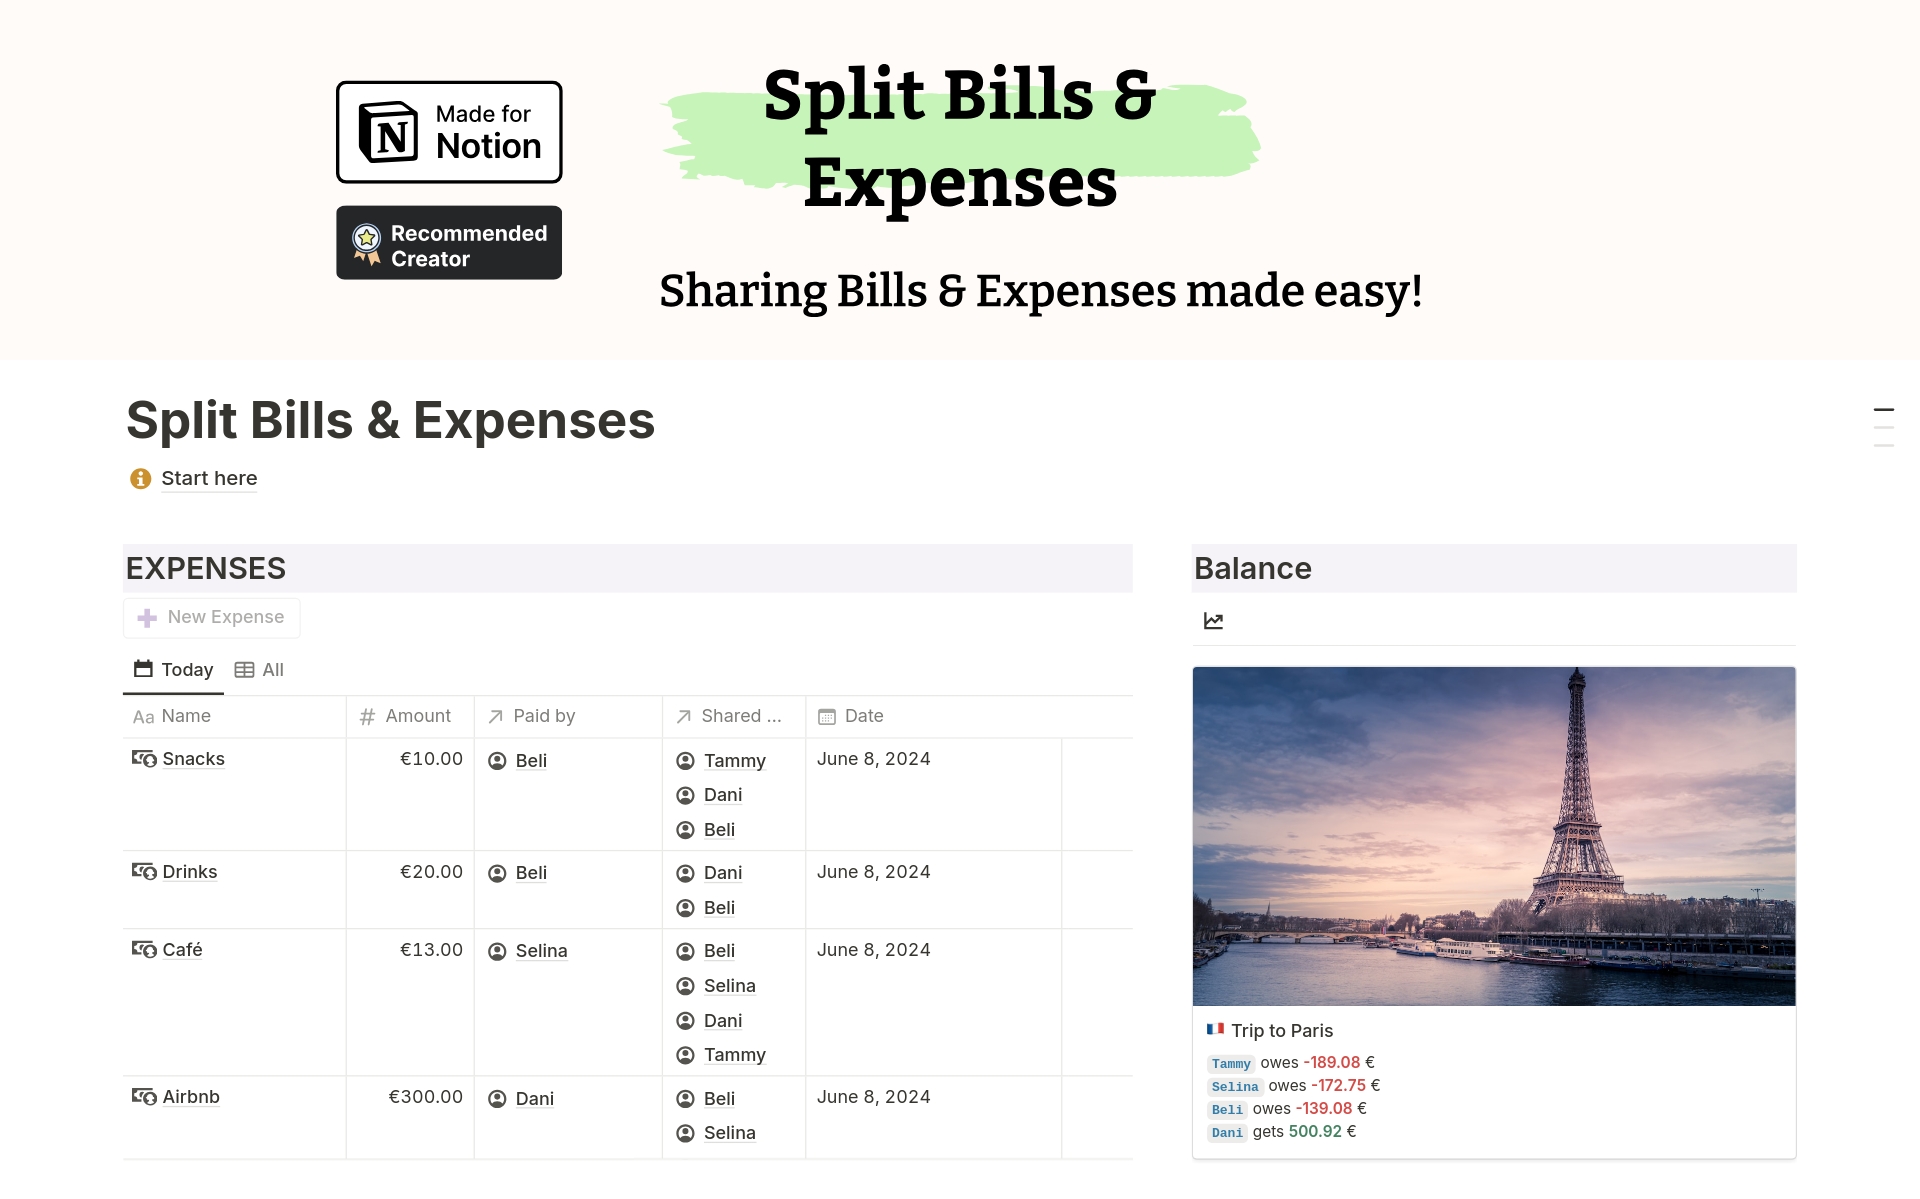 Aperçu du modèle de Split Bills & Expenses